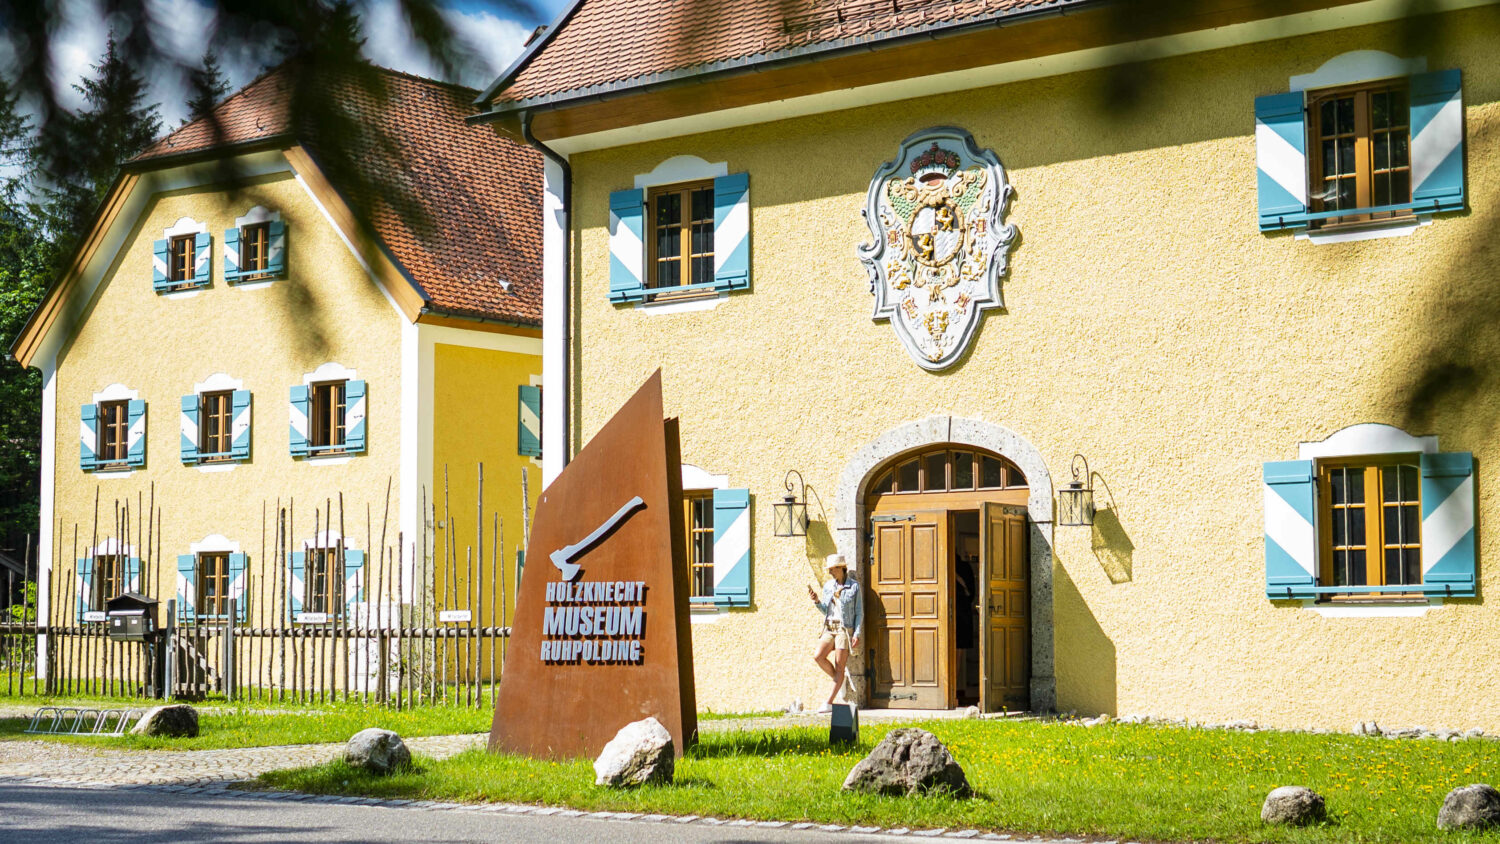 Hier sind Wald und Wirtschaft Zuhause: Das Holzknechtmuseum Ruhpolding.